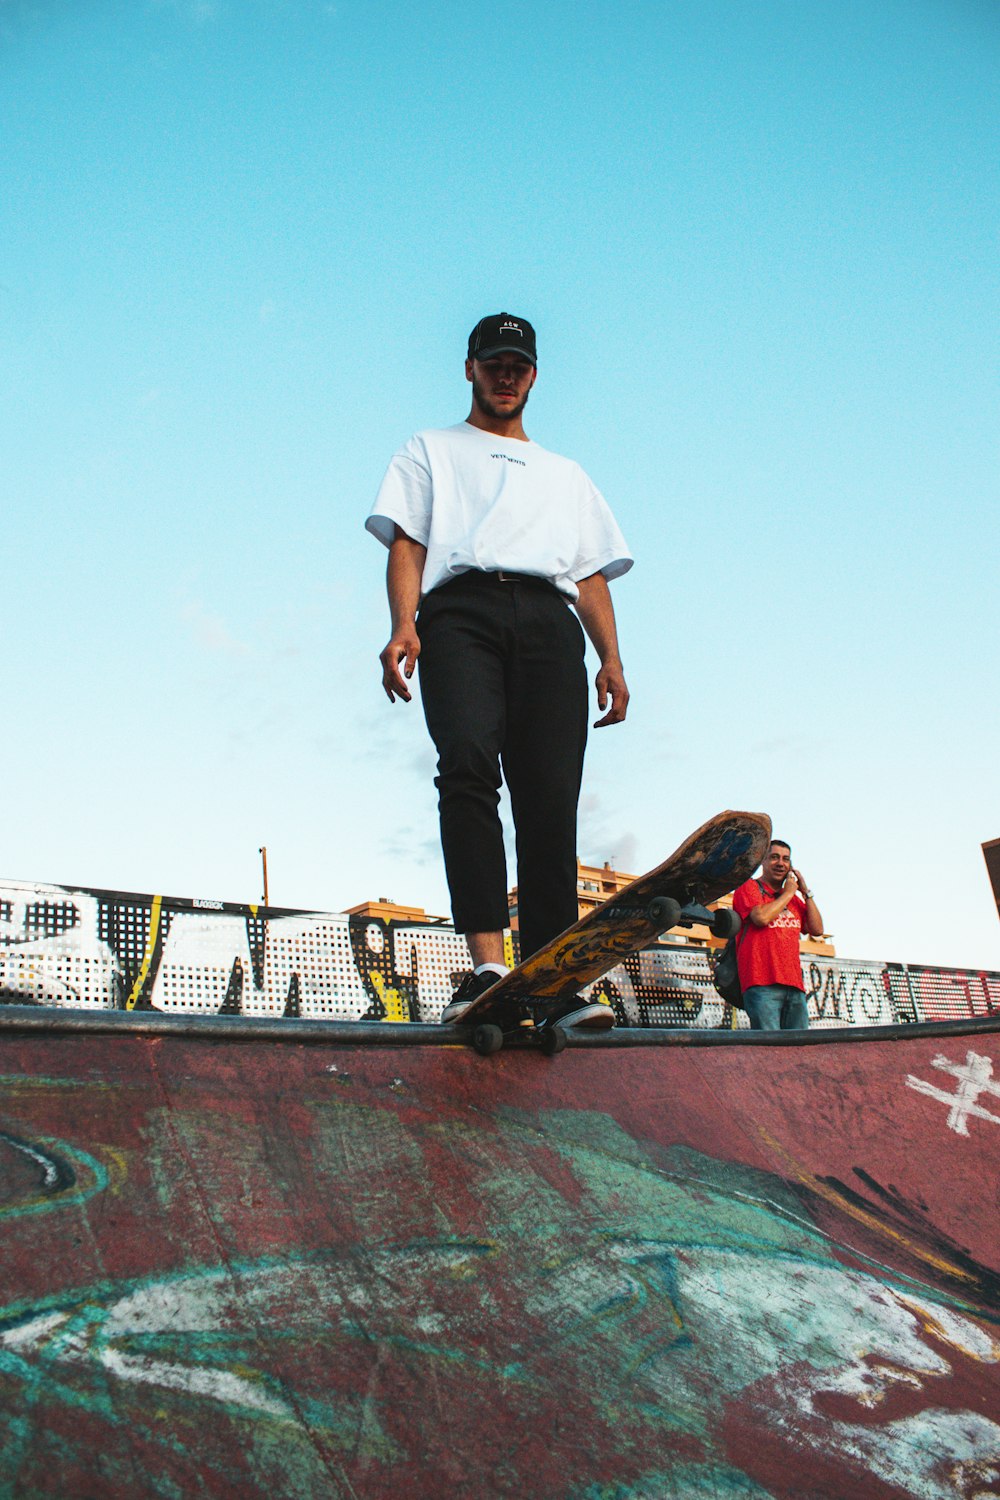 man wearing white shirt and black pants standing on skateboard ramp